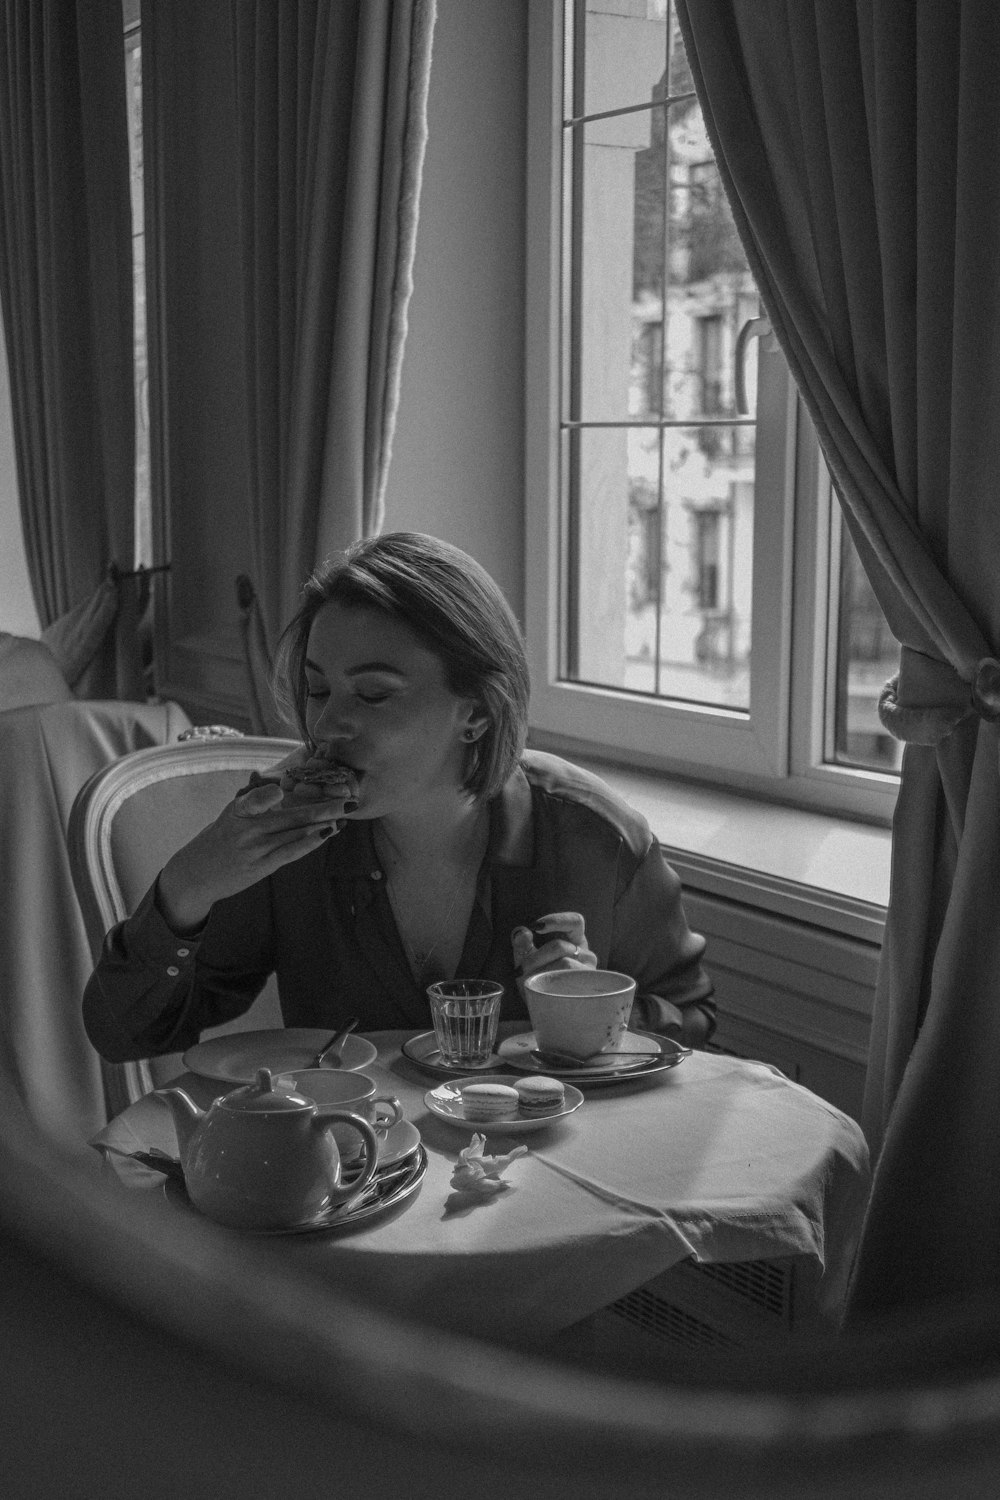 une femme assise à une table en train de manger de la nourriture